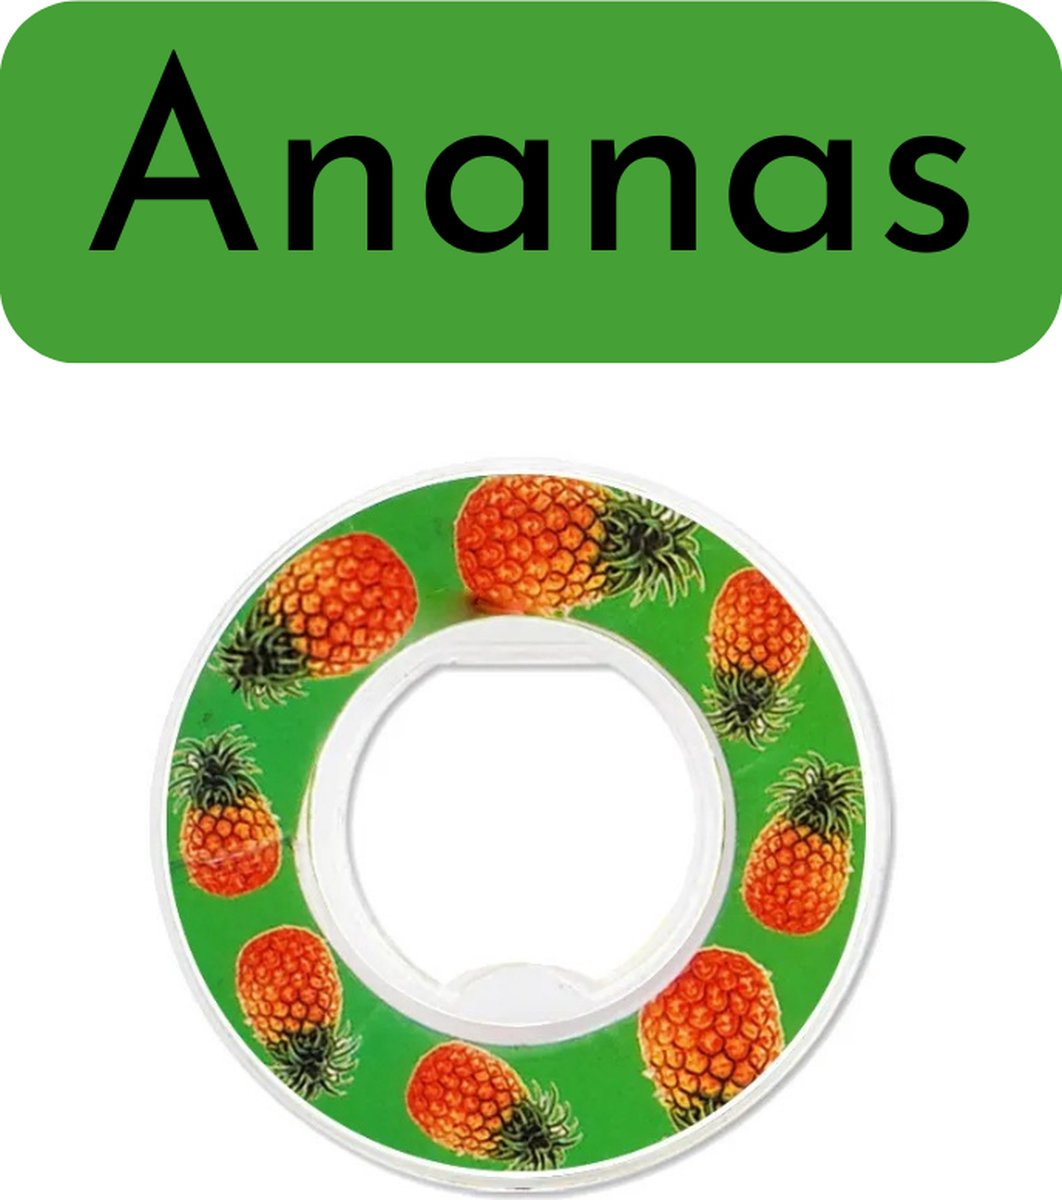 ReNew – Geurpod - Ananas – Inclusief 3 Pods - Hydrated – Verschillende smaken – Aroma’s – Navulling - Vegan – Bio – BPA vrij